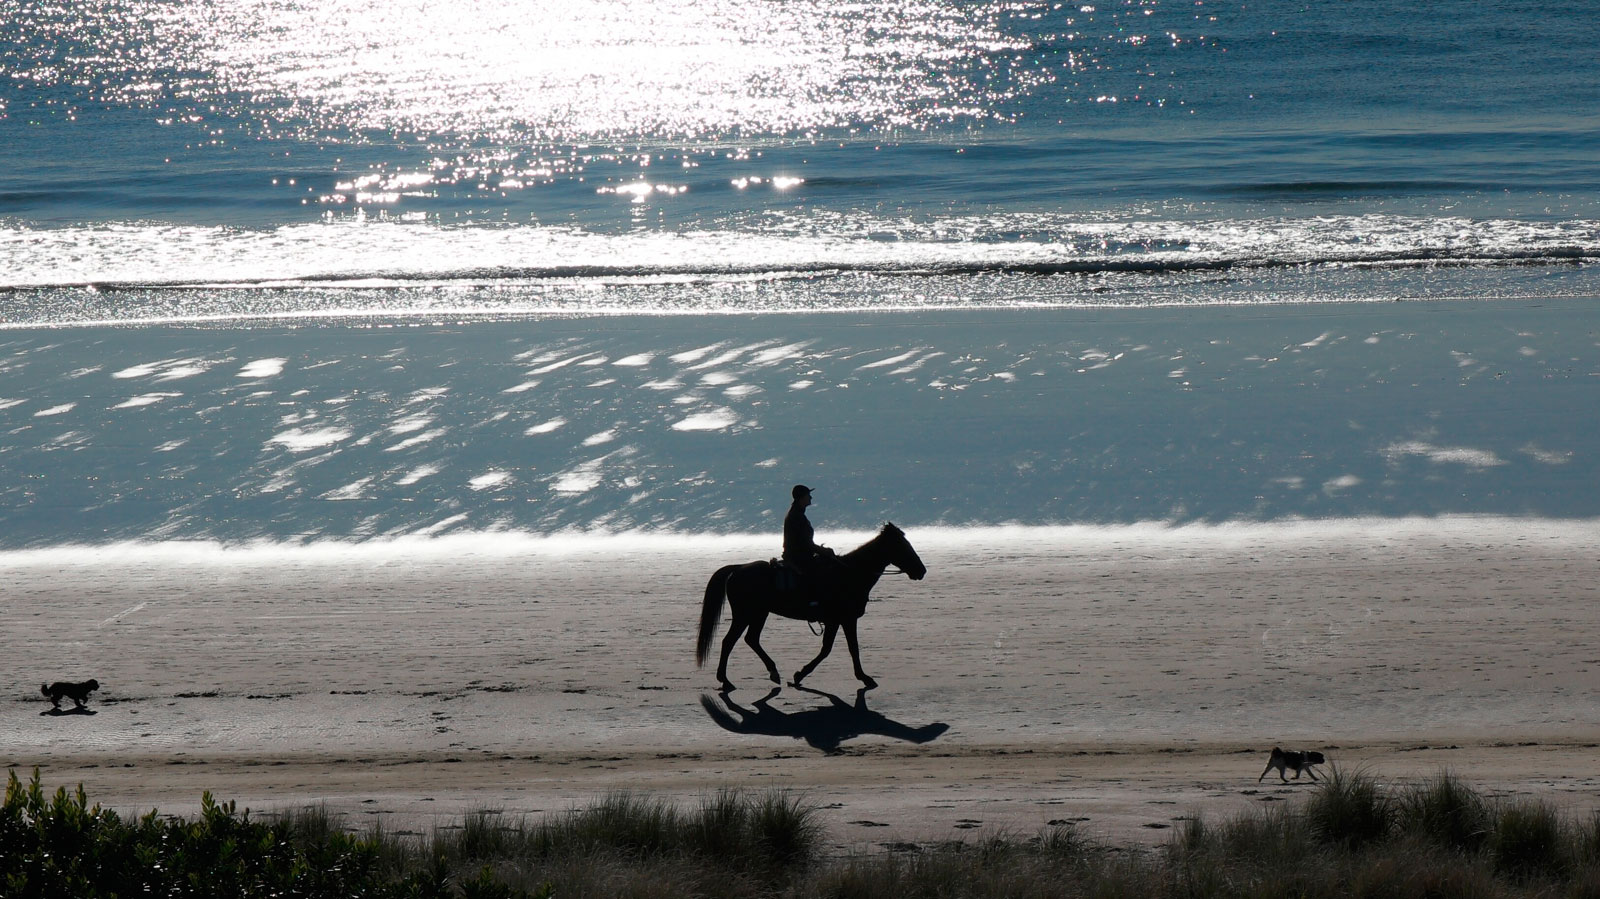 Horse riding on the beach - Oceania